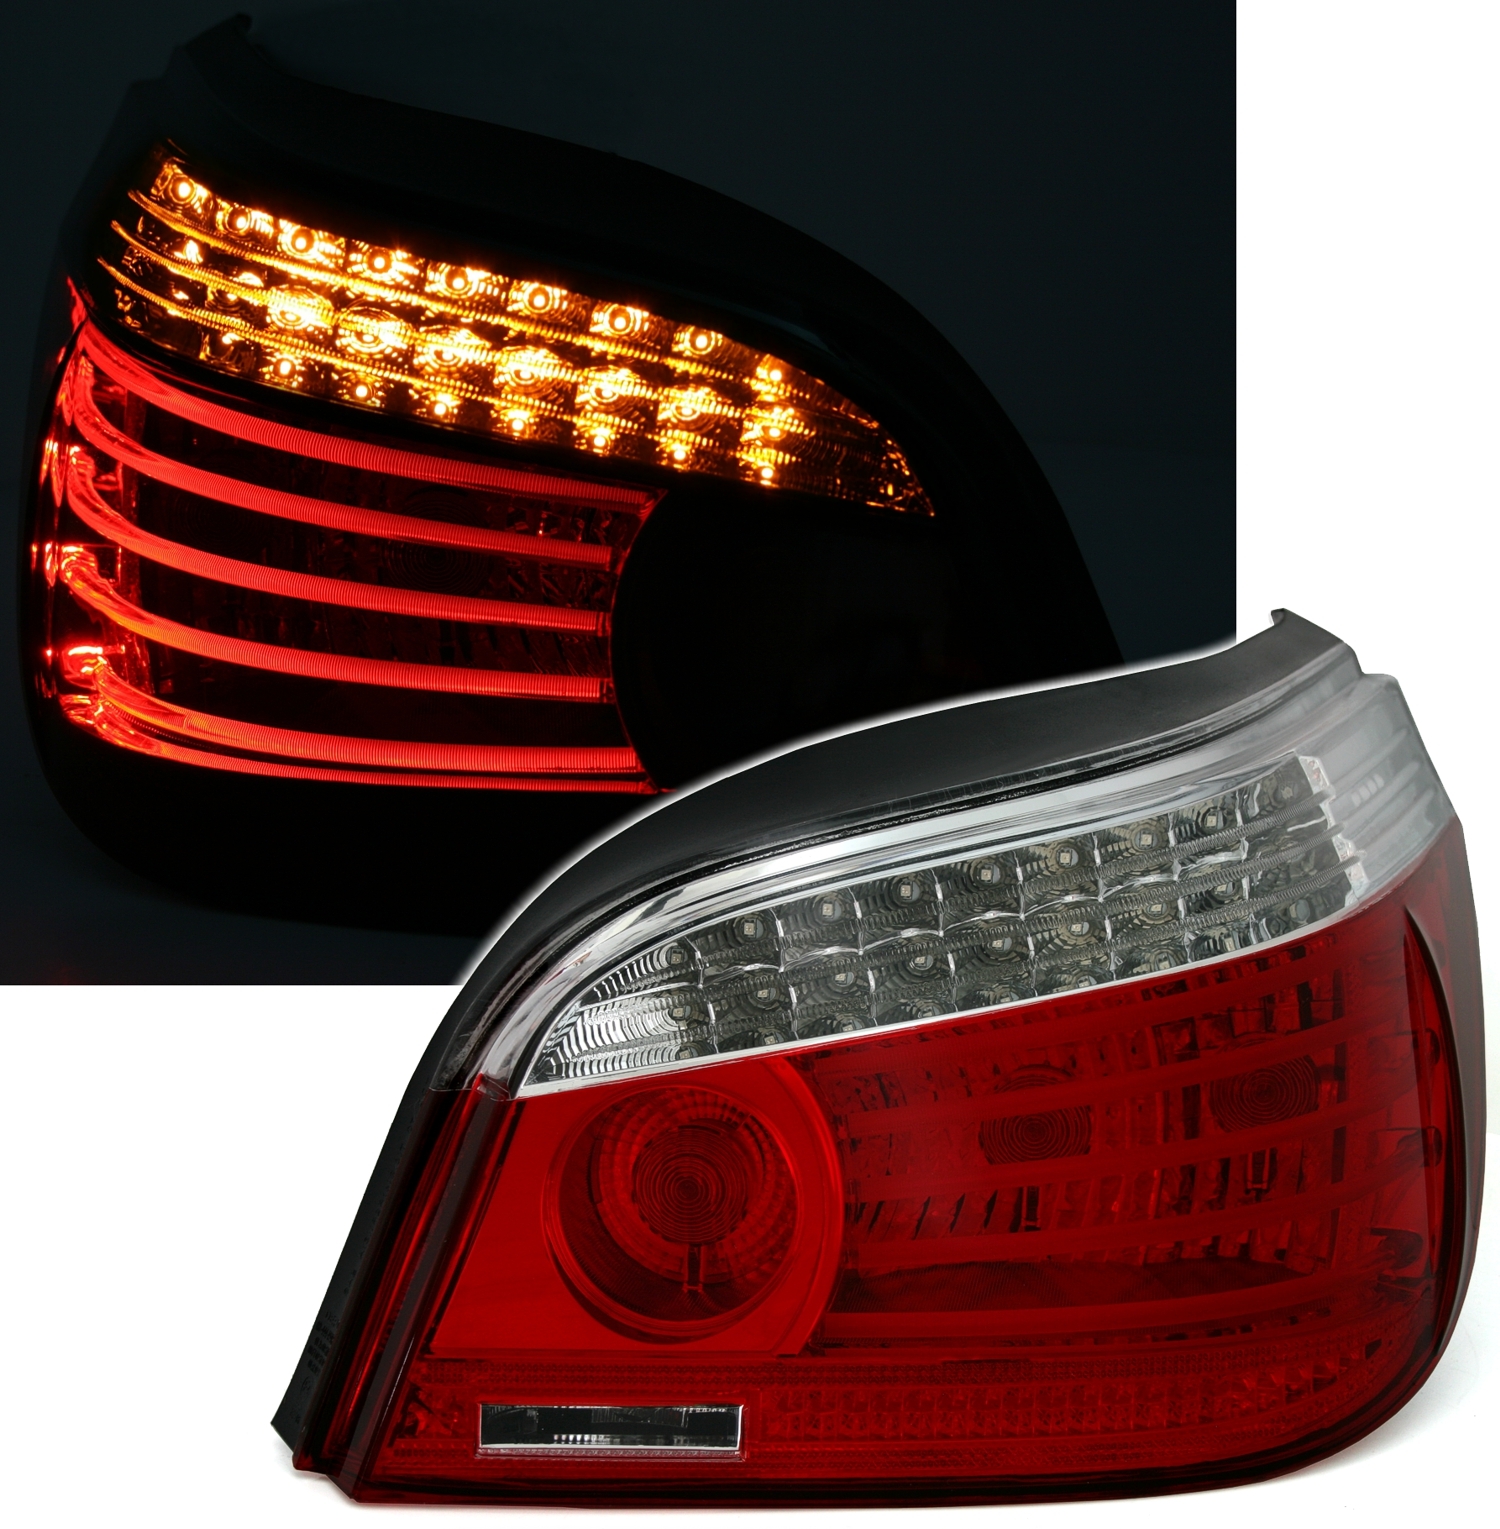 LED Rückleuchten Set in Rot Weiß für 5er BMW E60 mit